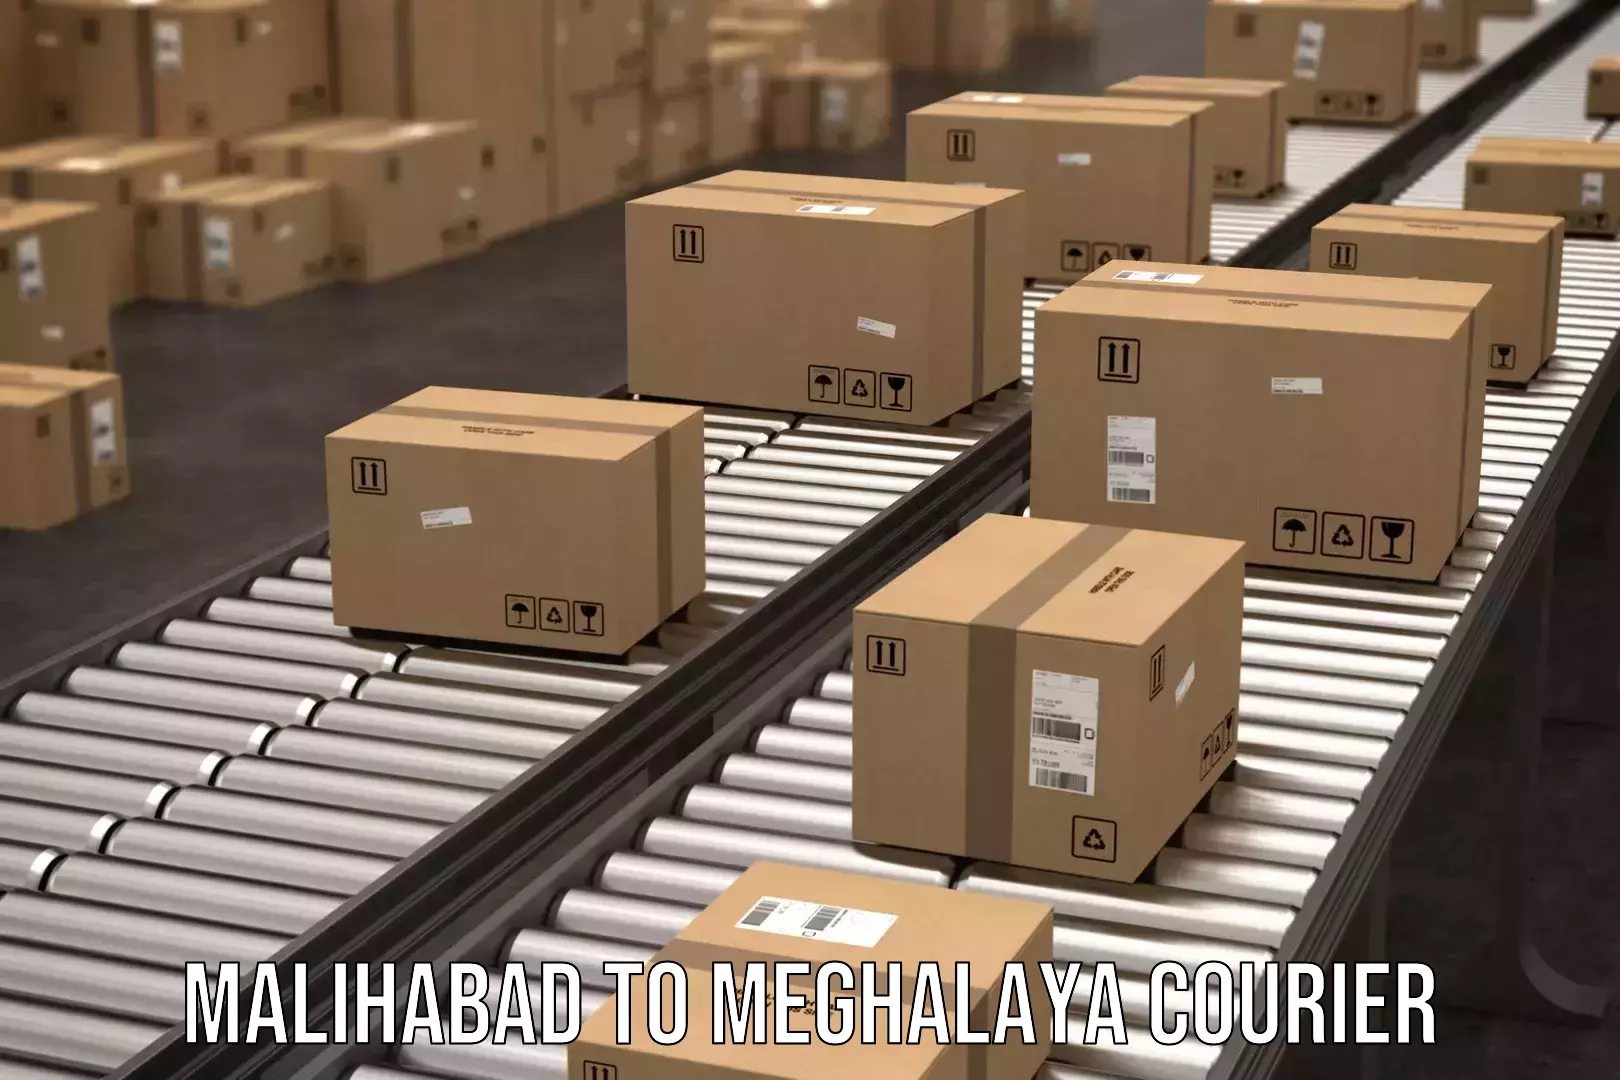 Holiday shipping services Malihabad to Meghalaya